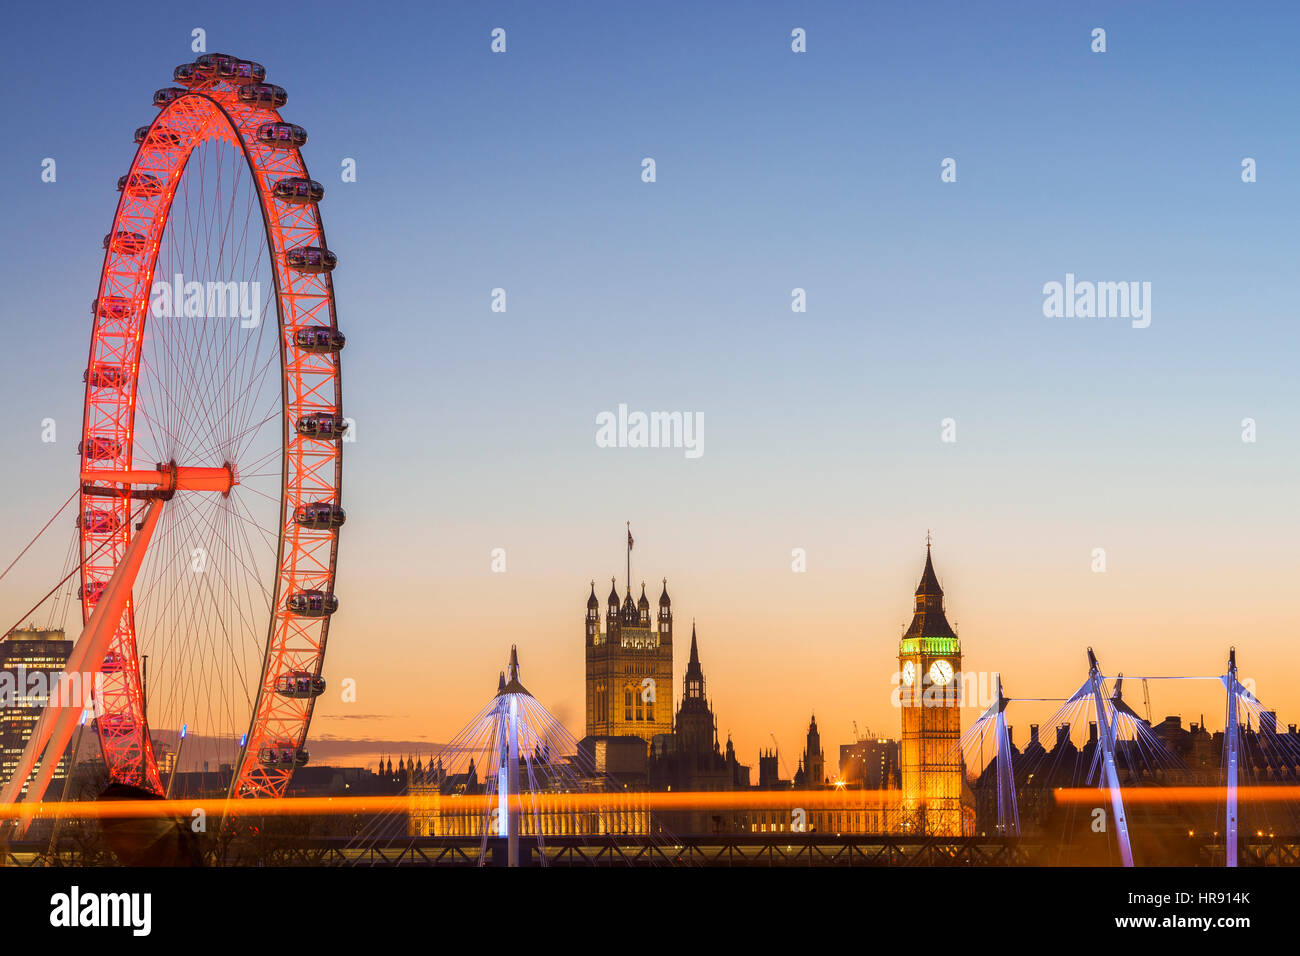 Londra Millennium Wheel e le case del Parlamento illuminato al crepuscolo con luce sentiero, Westminster, London, Regno Unito Foto Stock